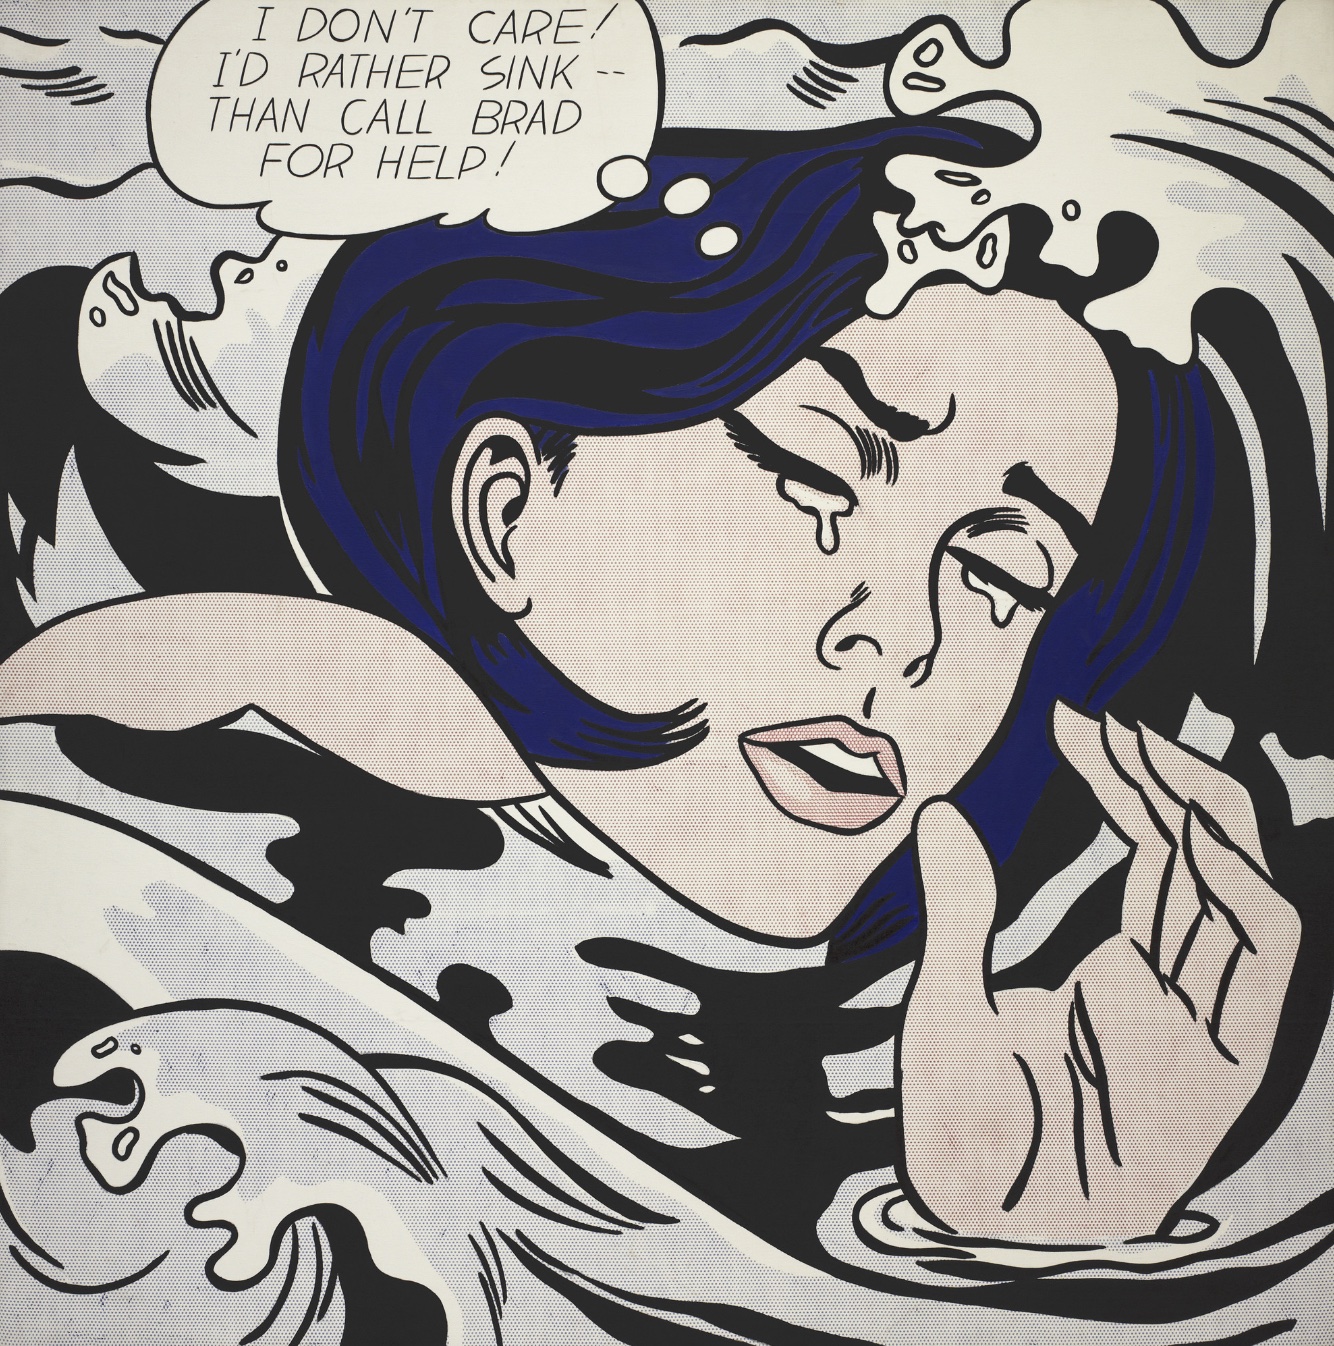 罗伊·利希滕斯坦 (Roy Lichtenstein) 的《溺水女孩》(Drowning Girl)——上面漫画书中哭泣的女人形象。